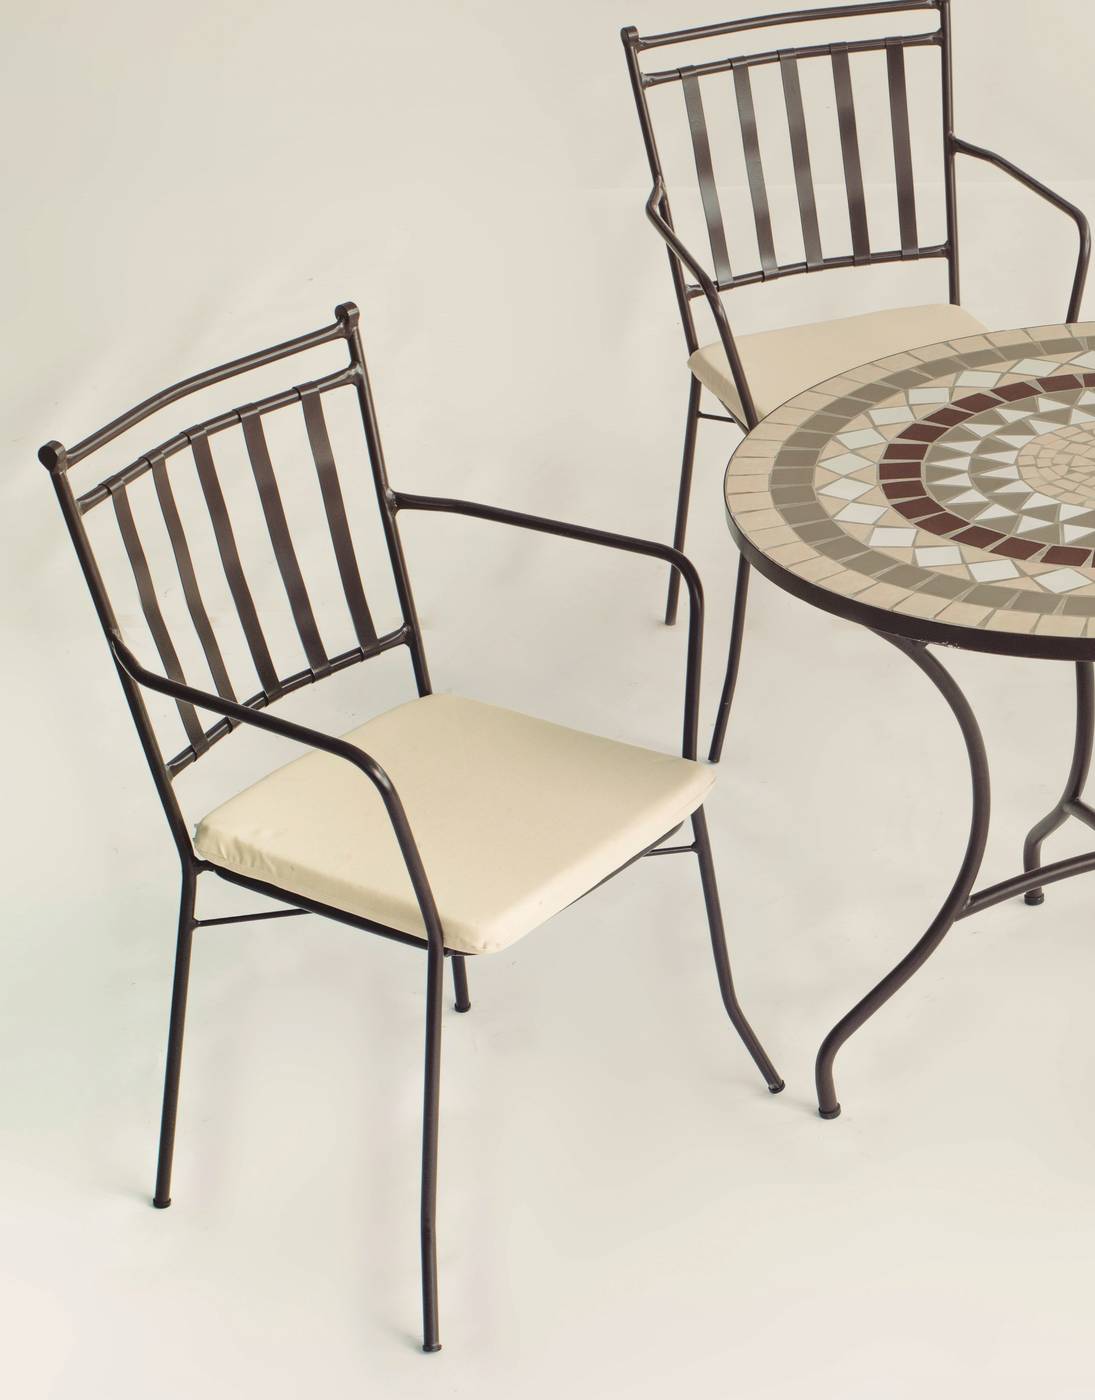 Conjunto Mosaico Malaya-Shifa - Conjunto de forja color bronce: mesa con tablero mosaico de 90 cm + 4 sillones con cojines asiento.